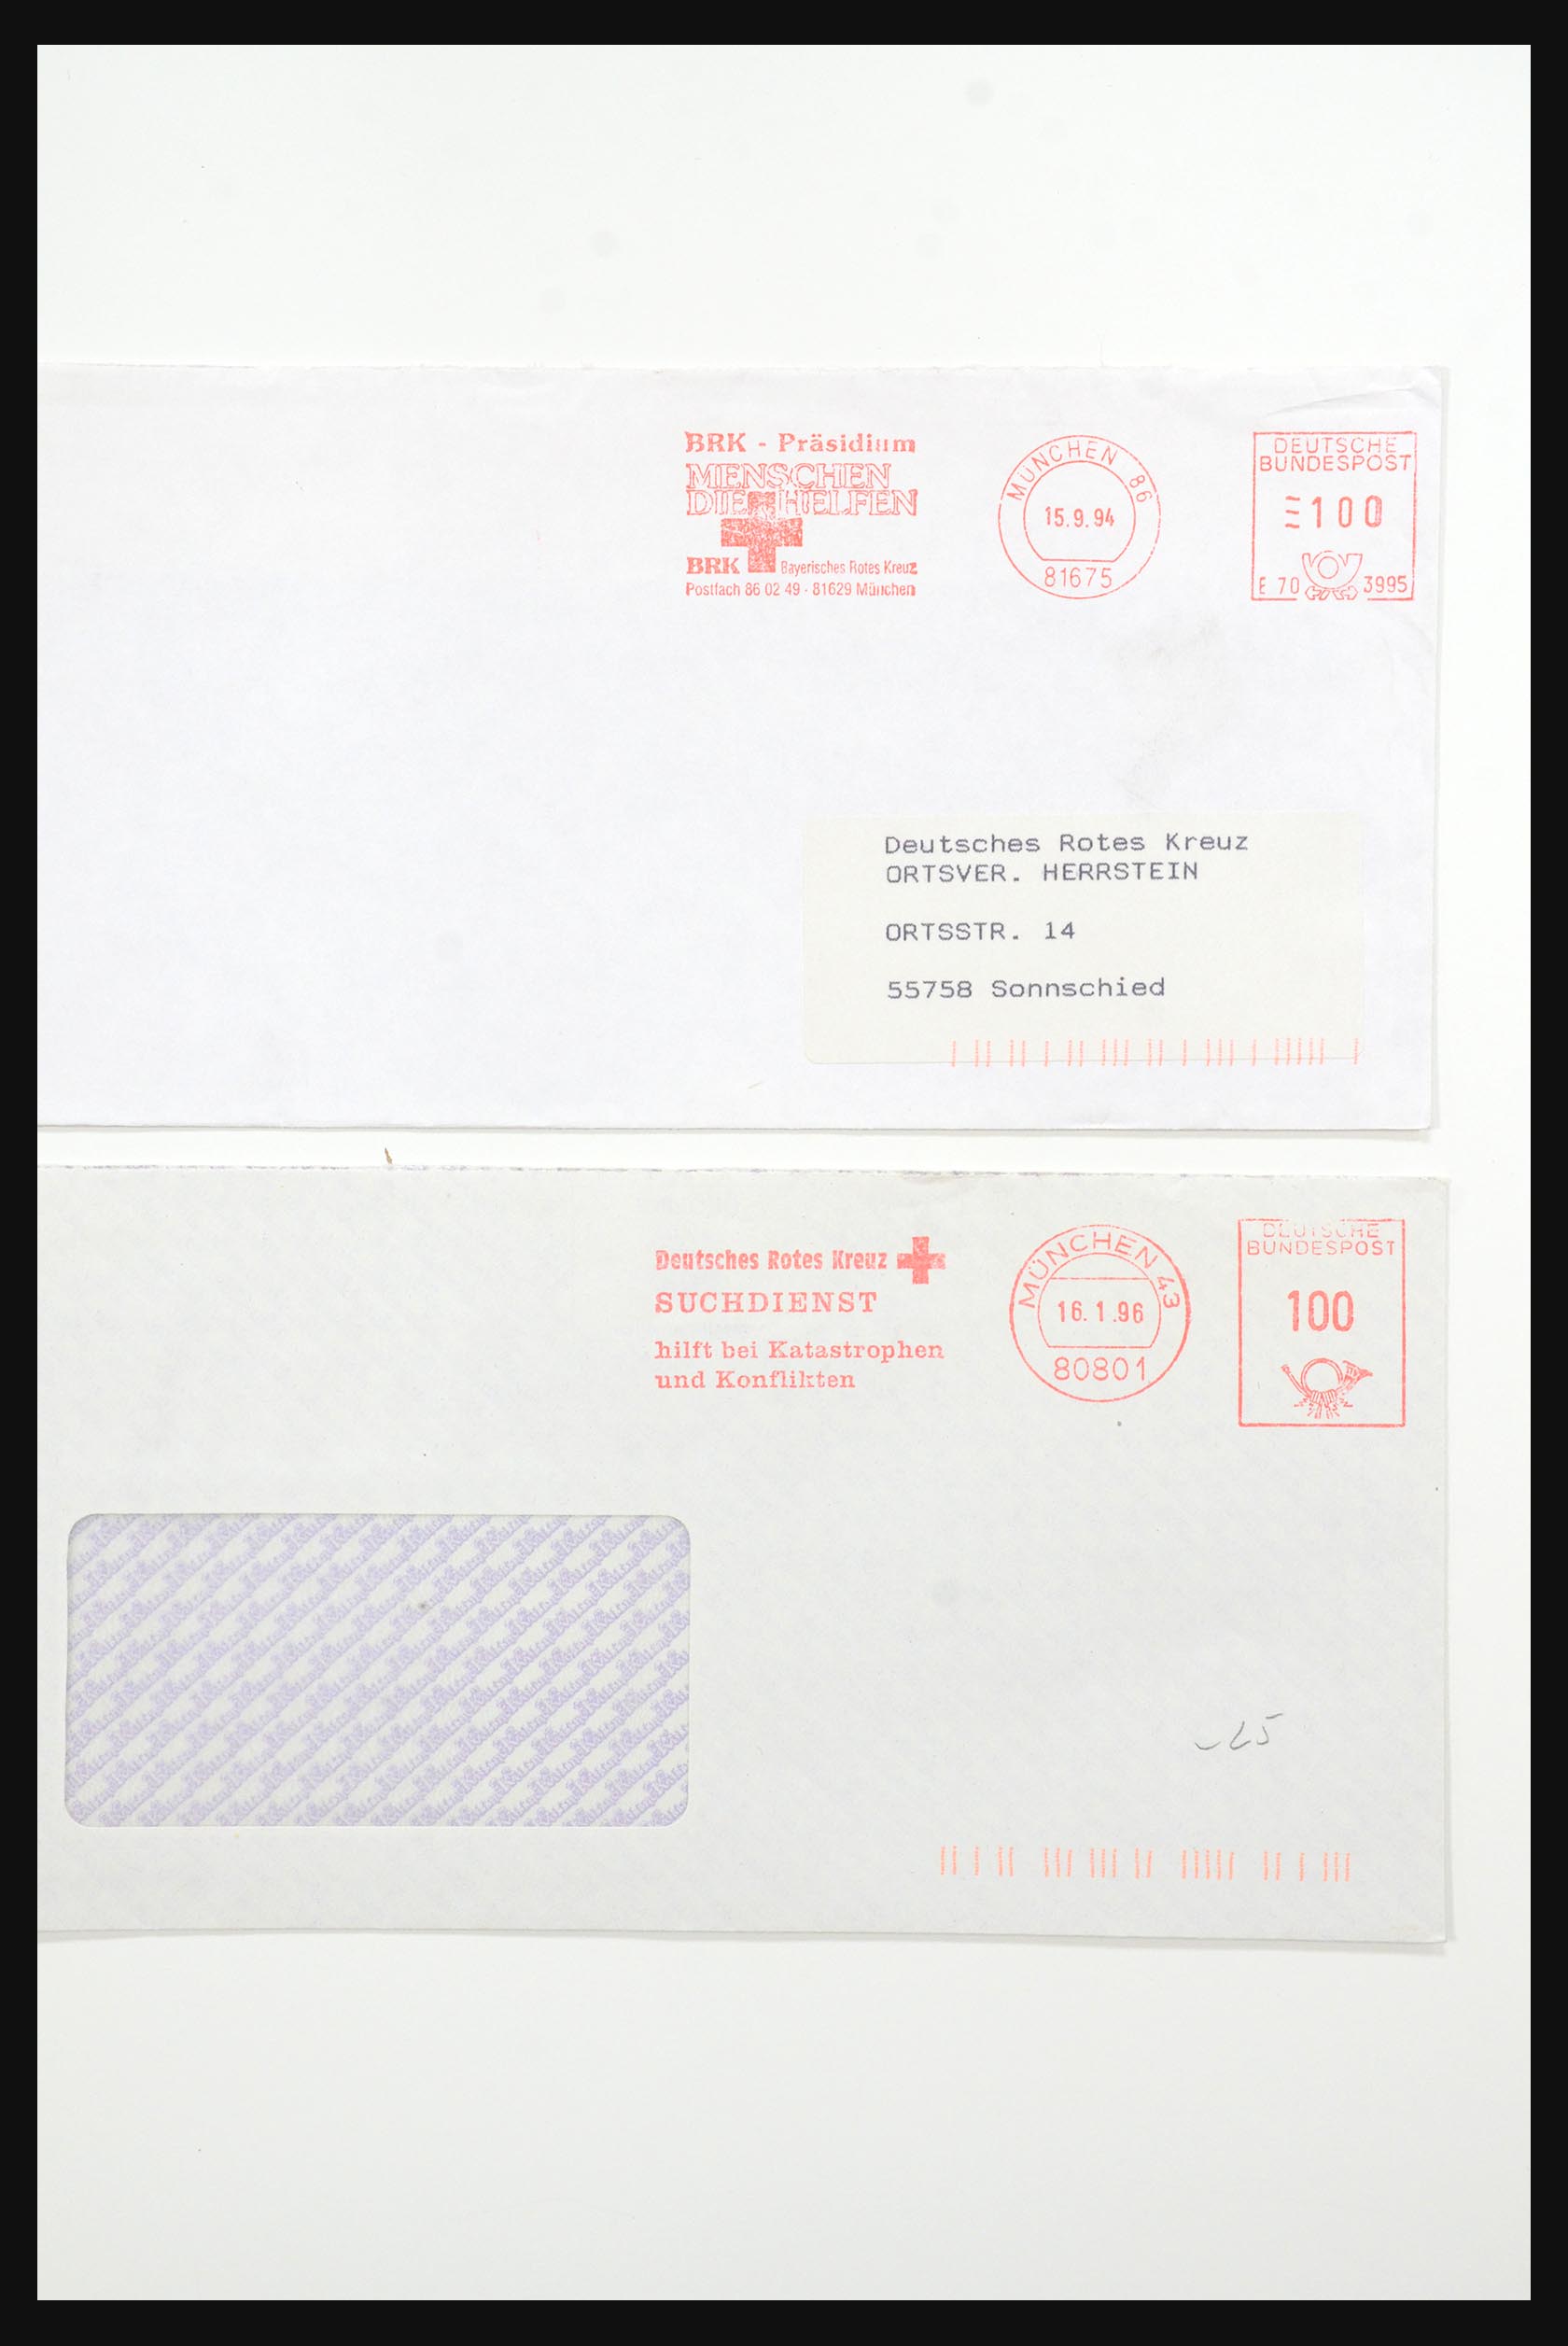 31365 1072 - 31365 Rode kruis brieven 1905-1975.